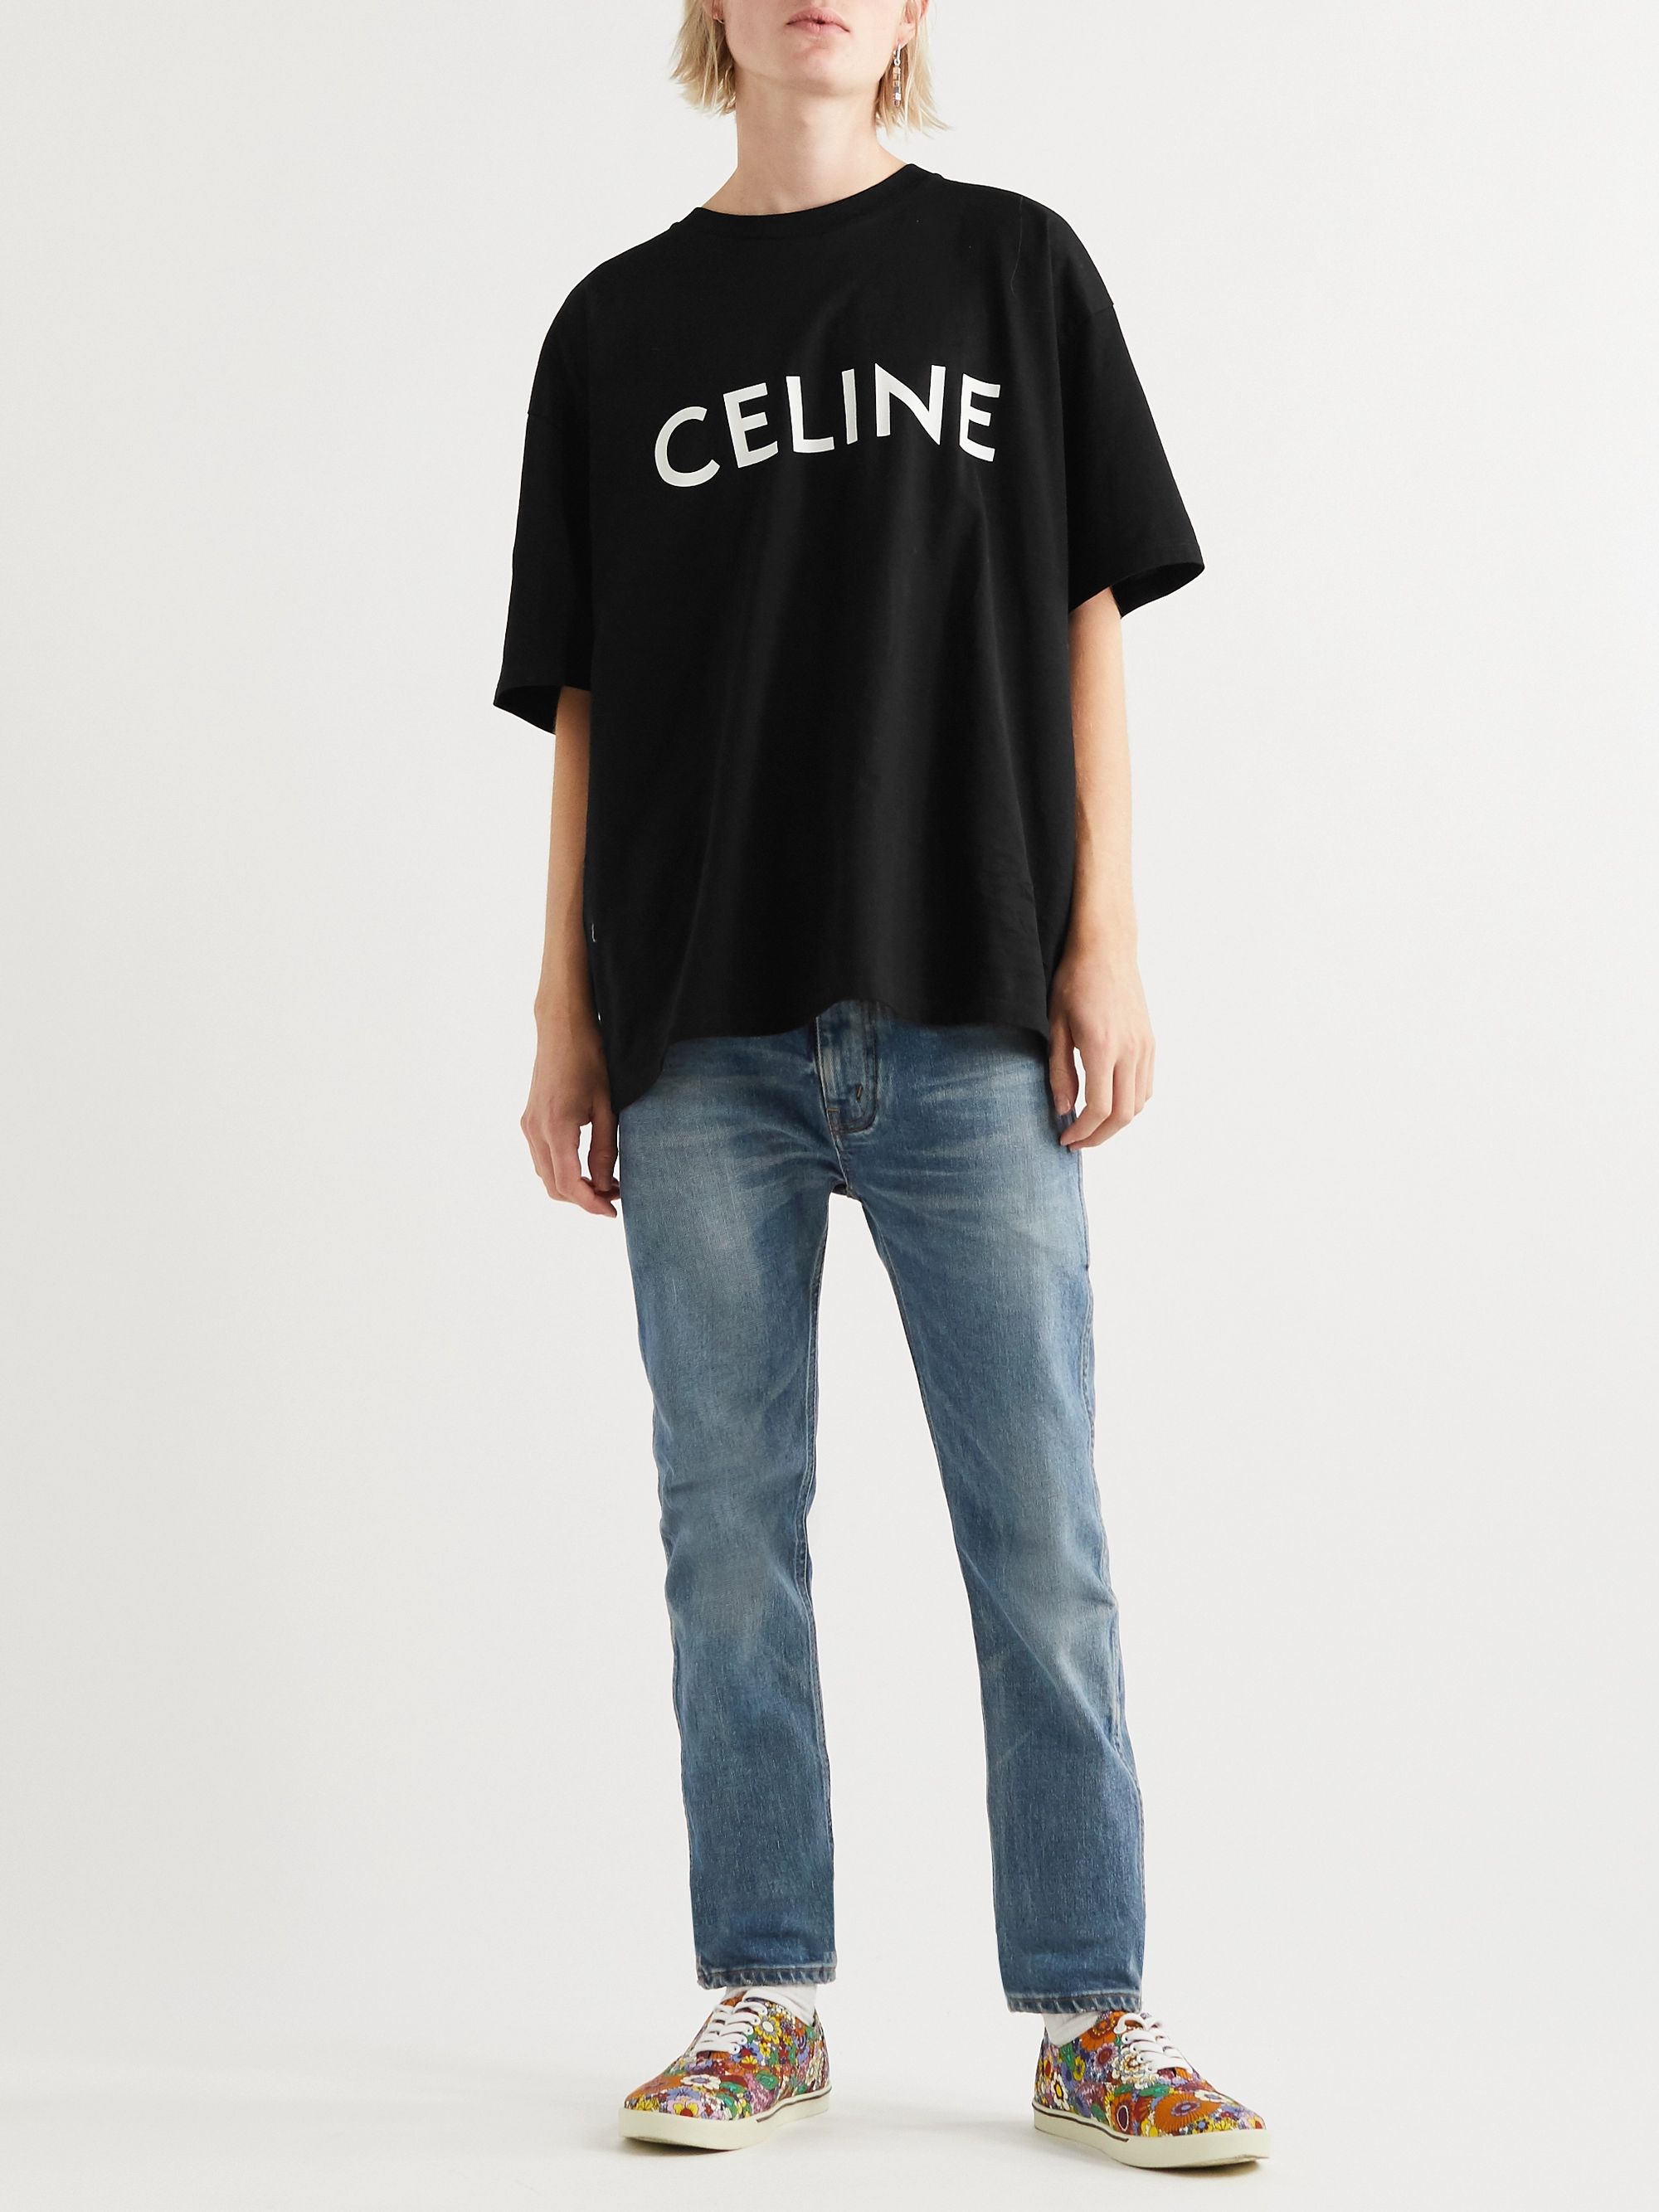 ✨新品セリーヌキューブですすセリーヌロゴ半袖TシャツサイズMです 